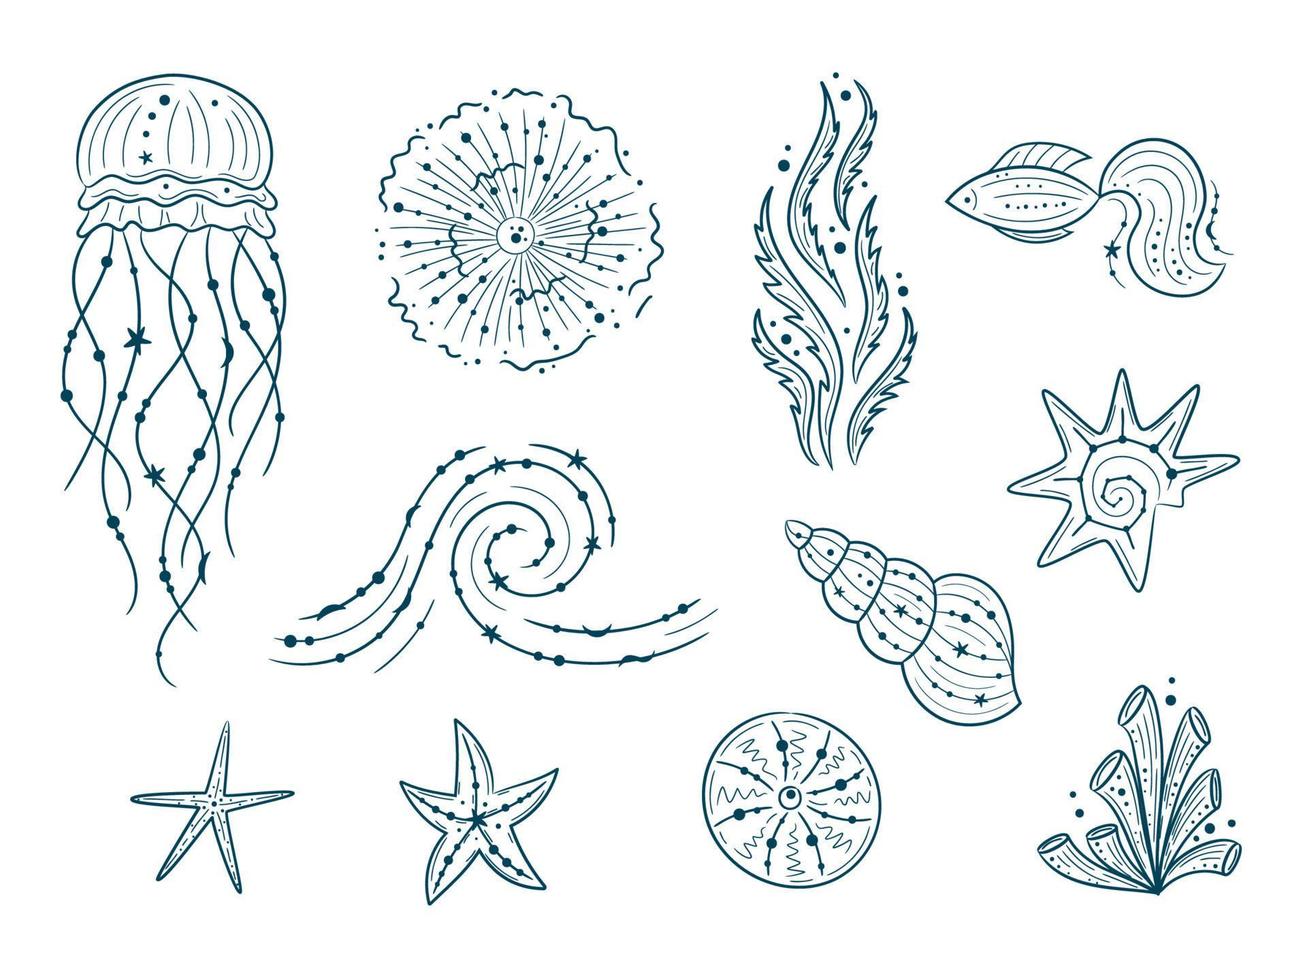 silhuetter av havet liv kontur isolerad på vit bakgrund. vektor handritade illustrationer av graverad linje. samling av skisser maneter, fiskar, tång, snäckskal